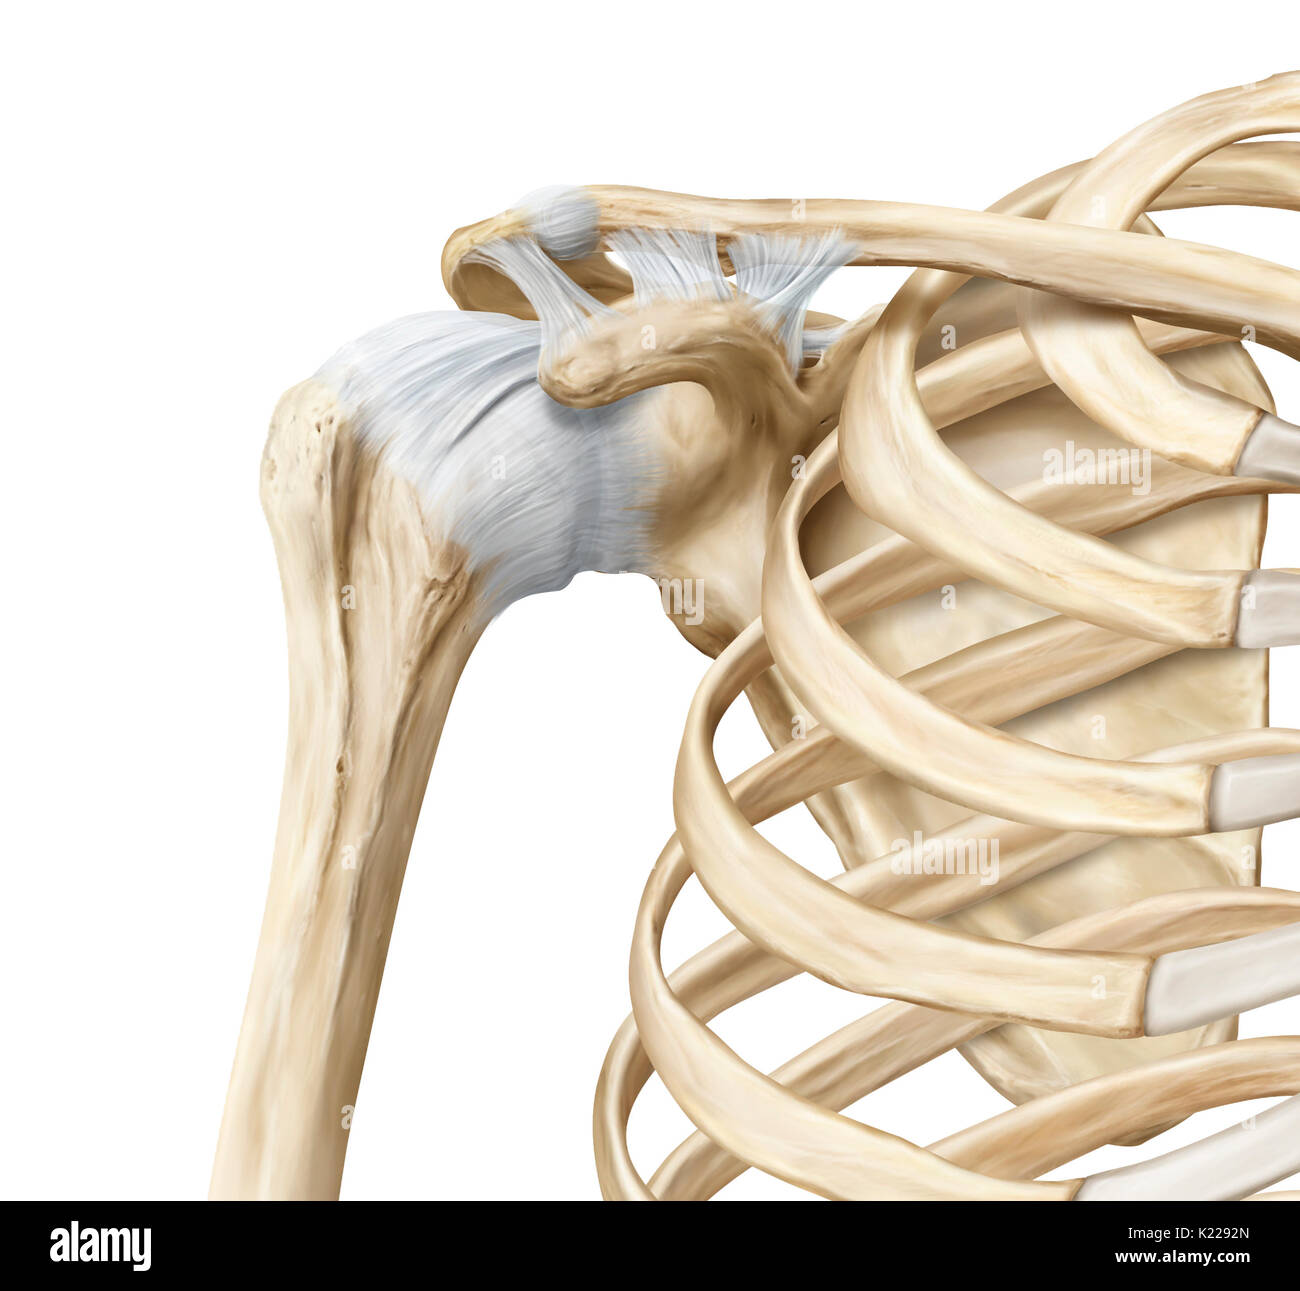 Ermöglicht Bewegung in viele Richtungen; das Kugelgelenk der Schulter ermöglicht dem humerus zu biegen und zu verlängern, zu drehen, und in der Nähe zu ziehen und vom Stamm ziehen. Stockfoto